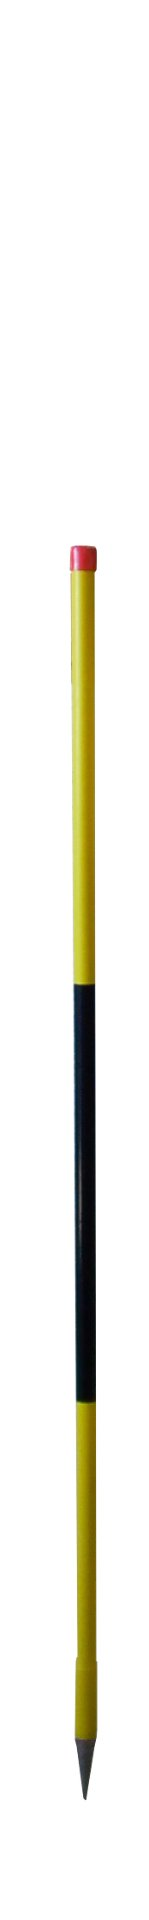 NESTLE Schneeleitstab aus Holz, 150 cm, gelb/schwarz  12 Stück im Set (von Nr. 11300000)